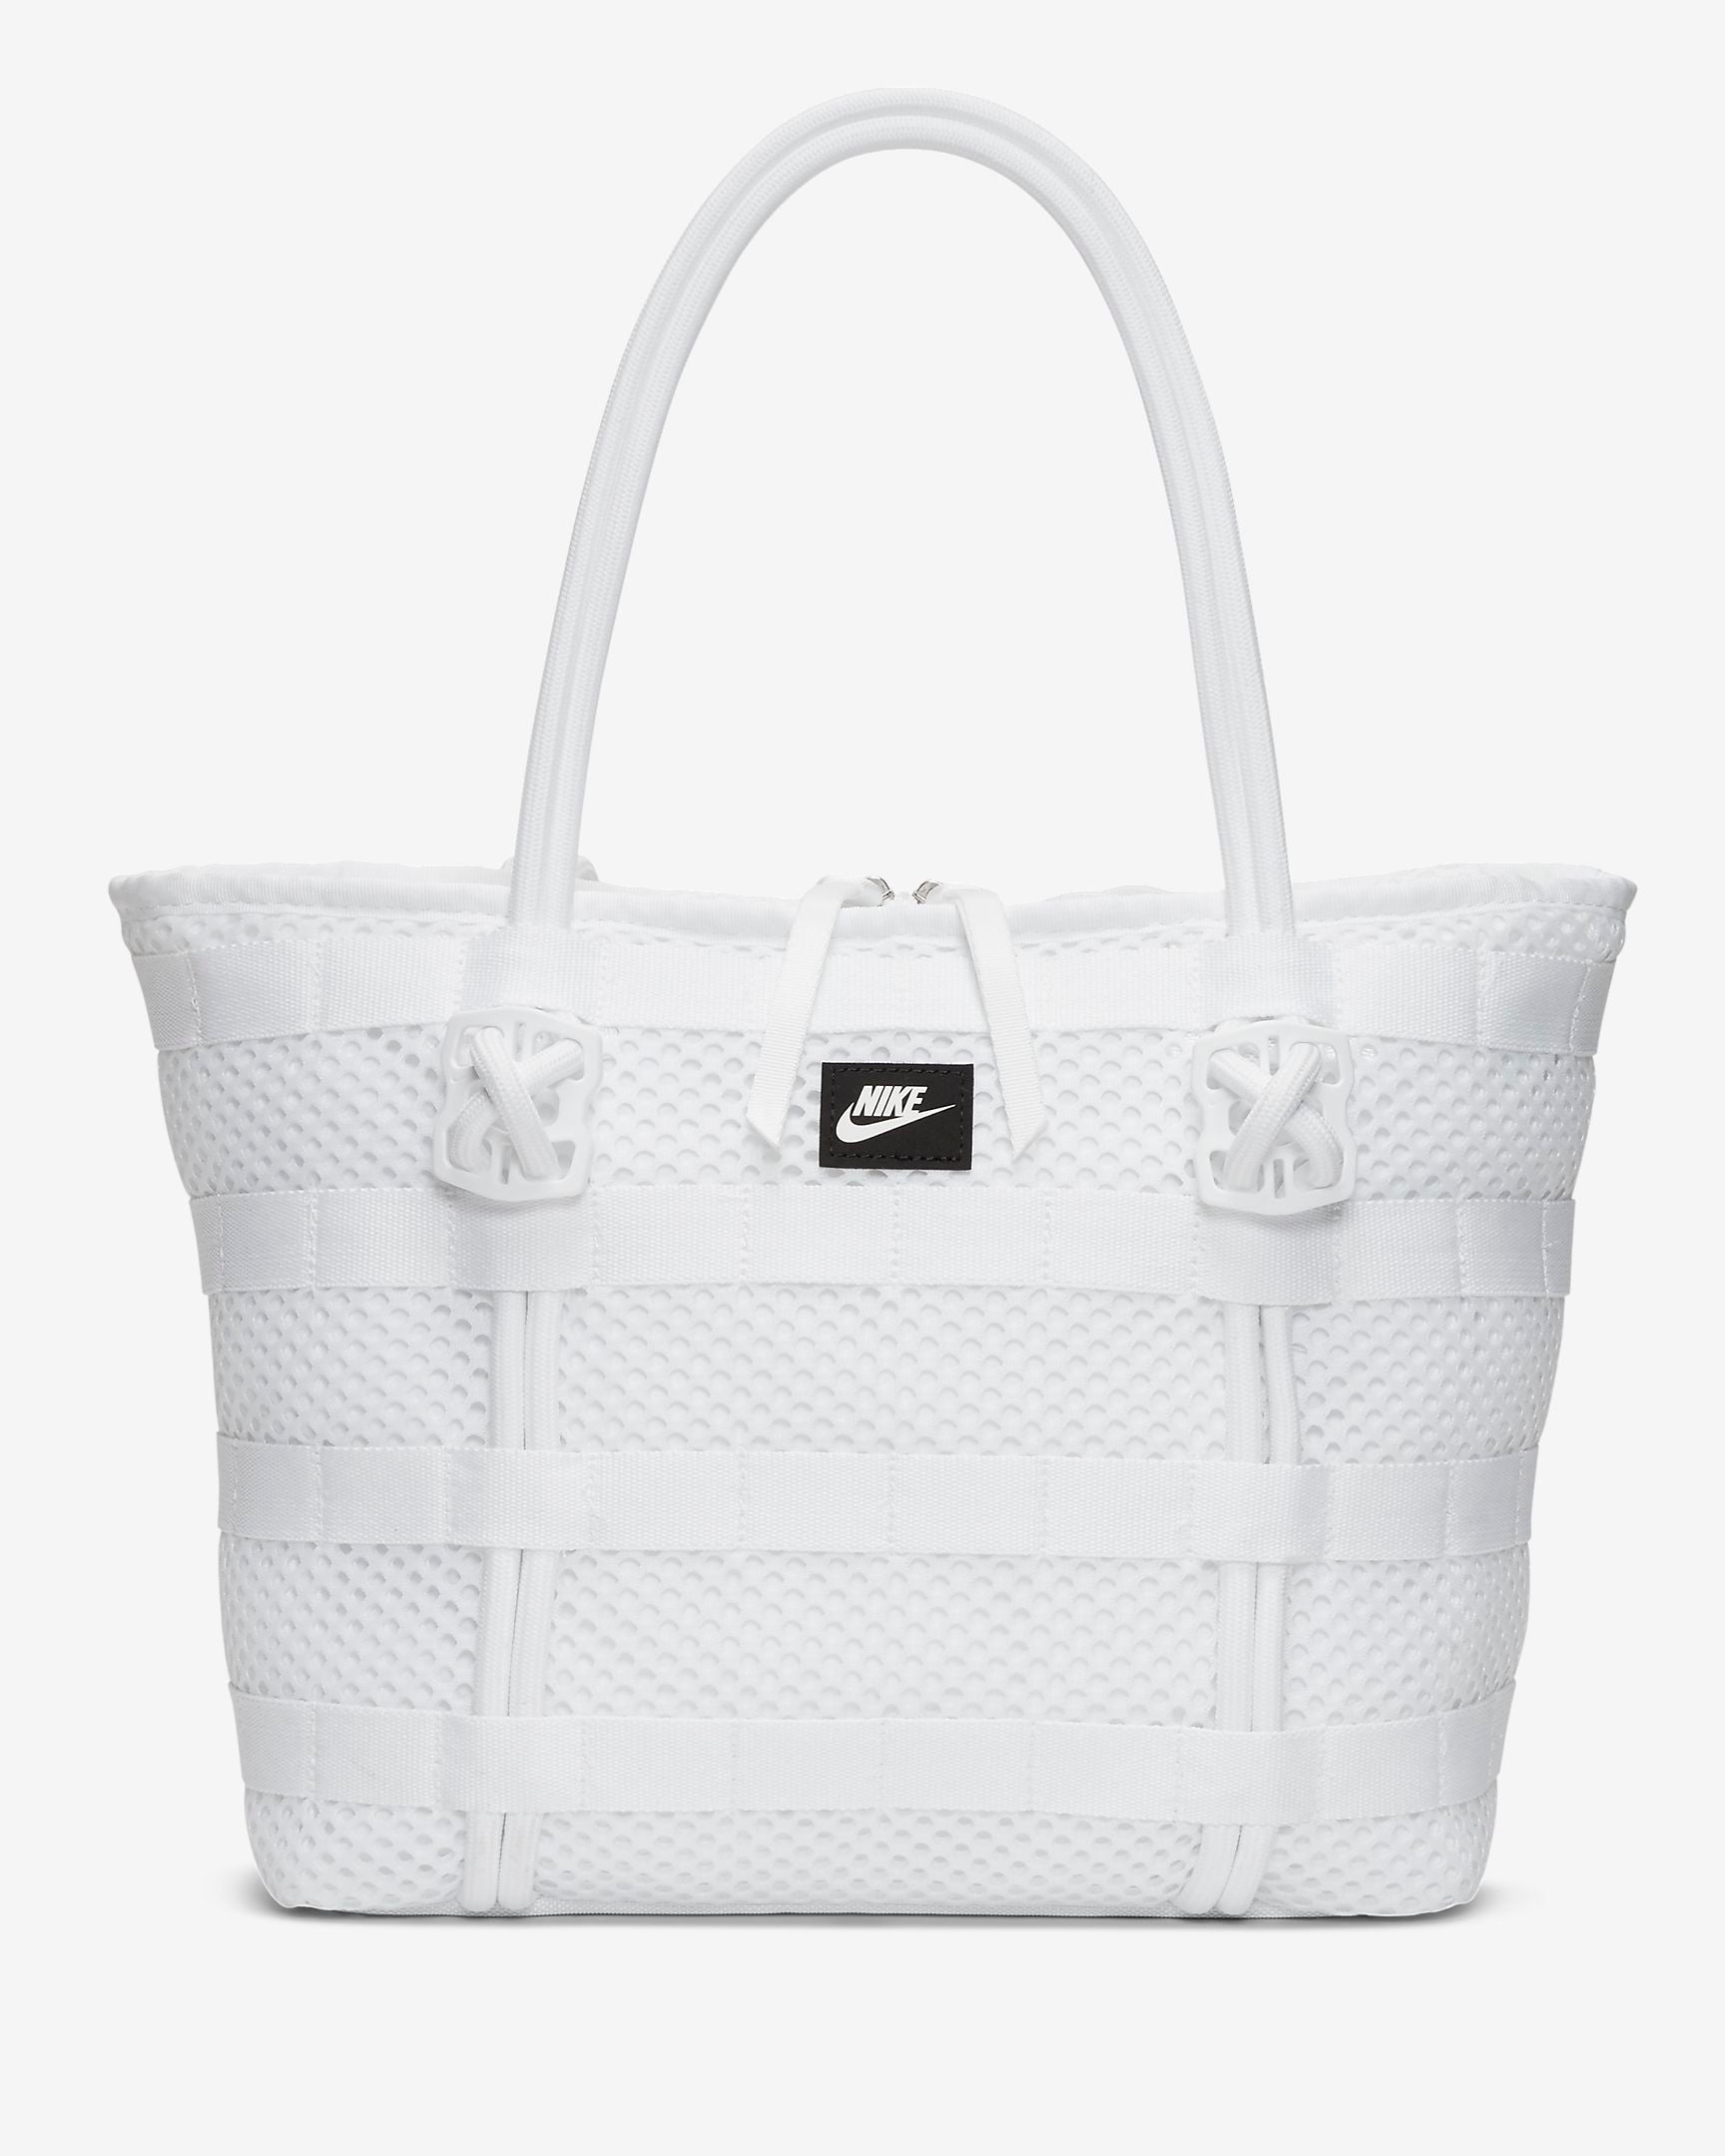 Nike Air Tote Bag